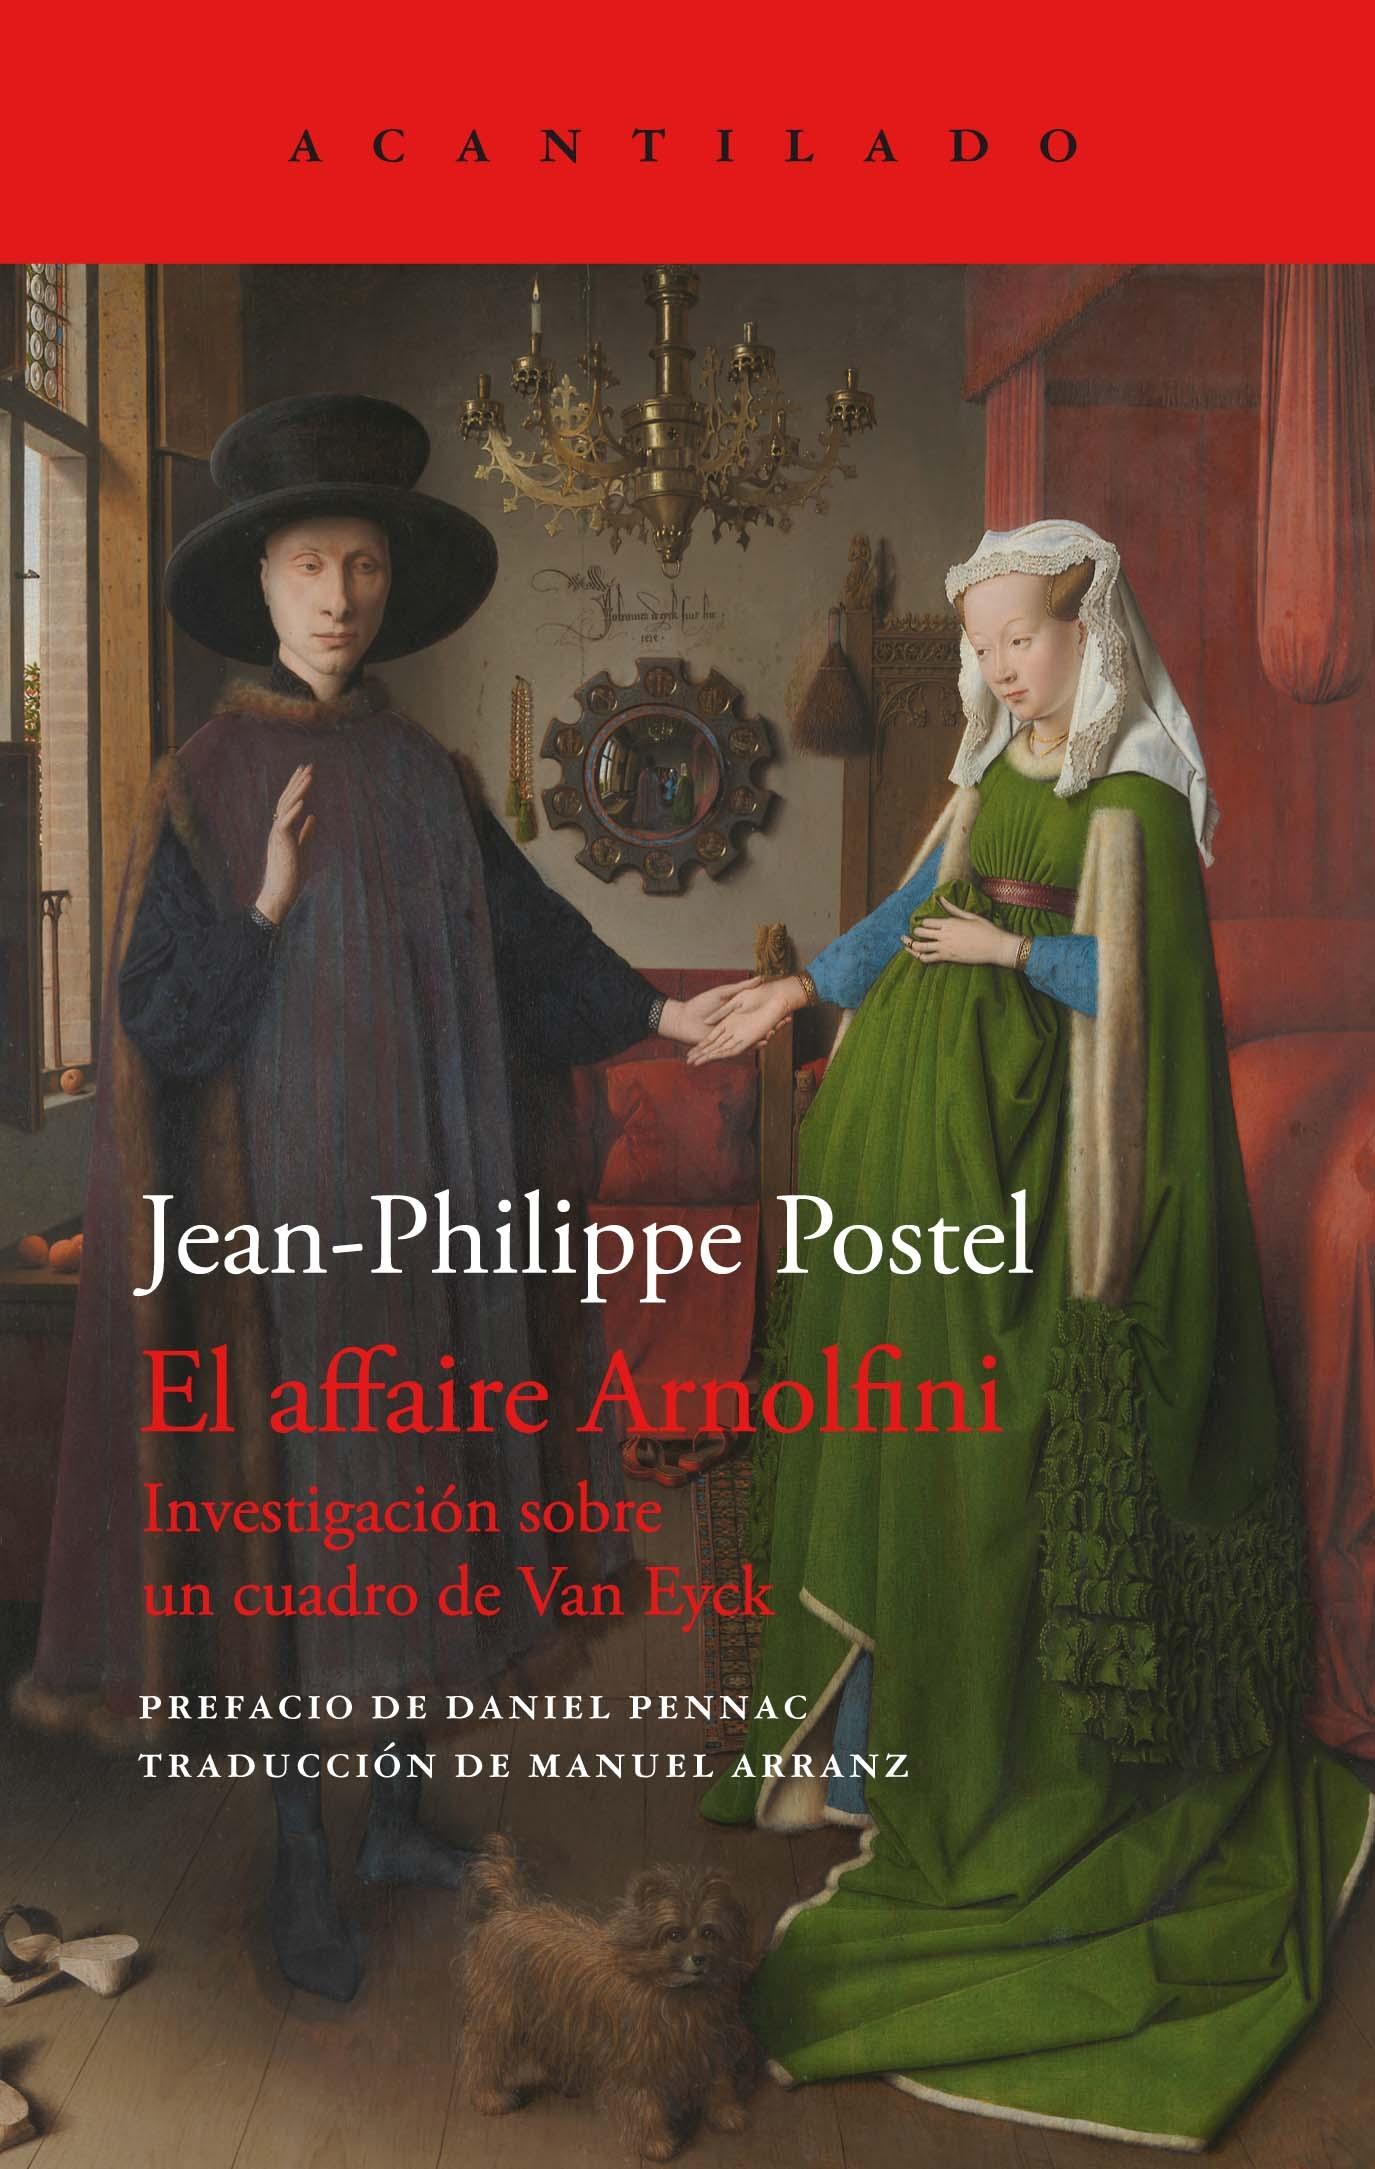 Affaire Arnolfini, El "Investigación sobre un cuadro de Van Eyck"